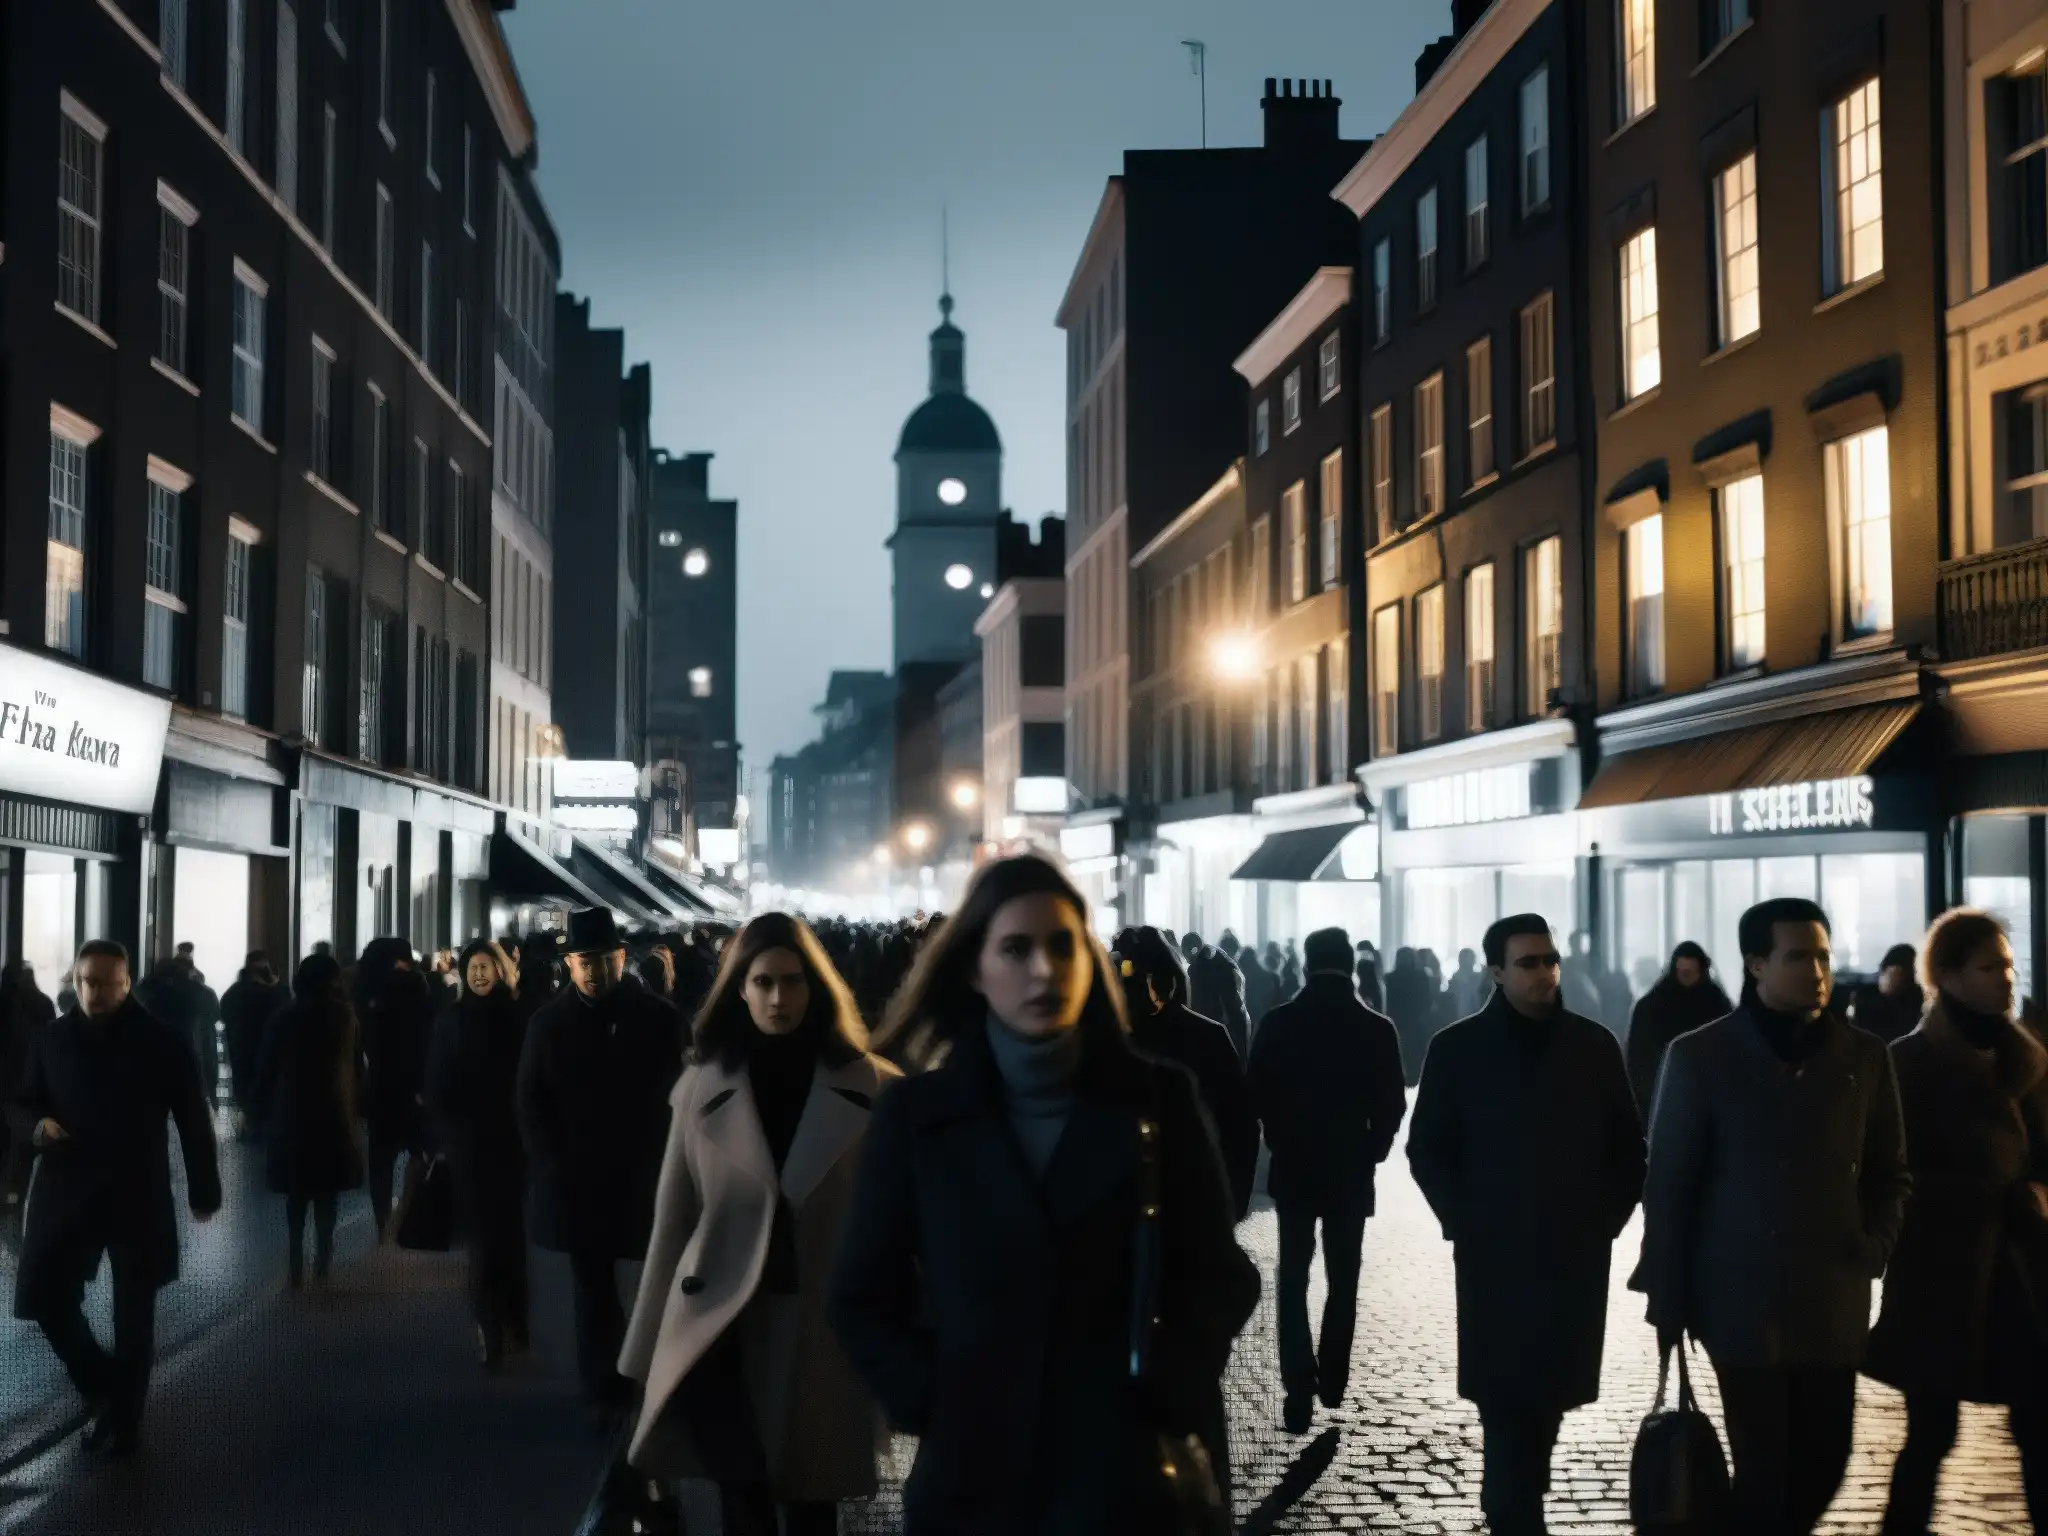 Imagen nocturna de una concurrida calle de la ciudad, con edificios iluminados a lo lejos y sombras proyectando siluetas misteriosas en el pavimento